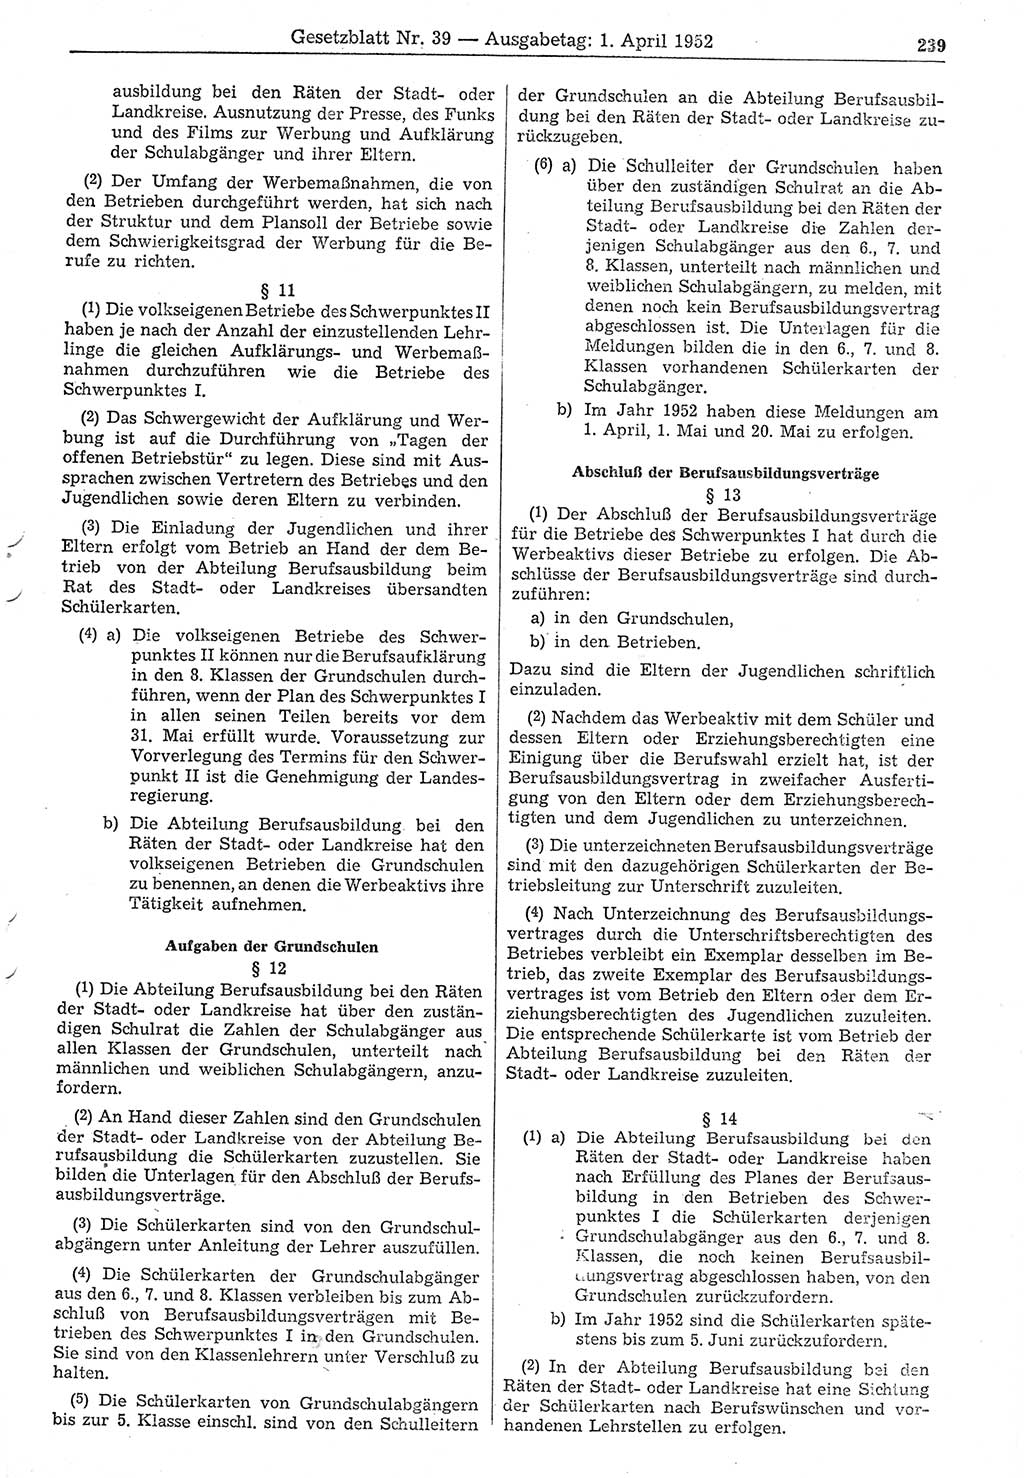 Gesetzblatt (GBl.) der Deutschen Demokratischen Republik (DDR) 1952, Seite 239 (GBl. DDR 1952, S. 239)